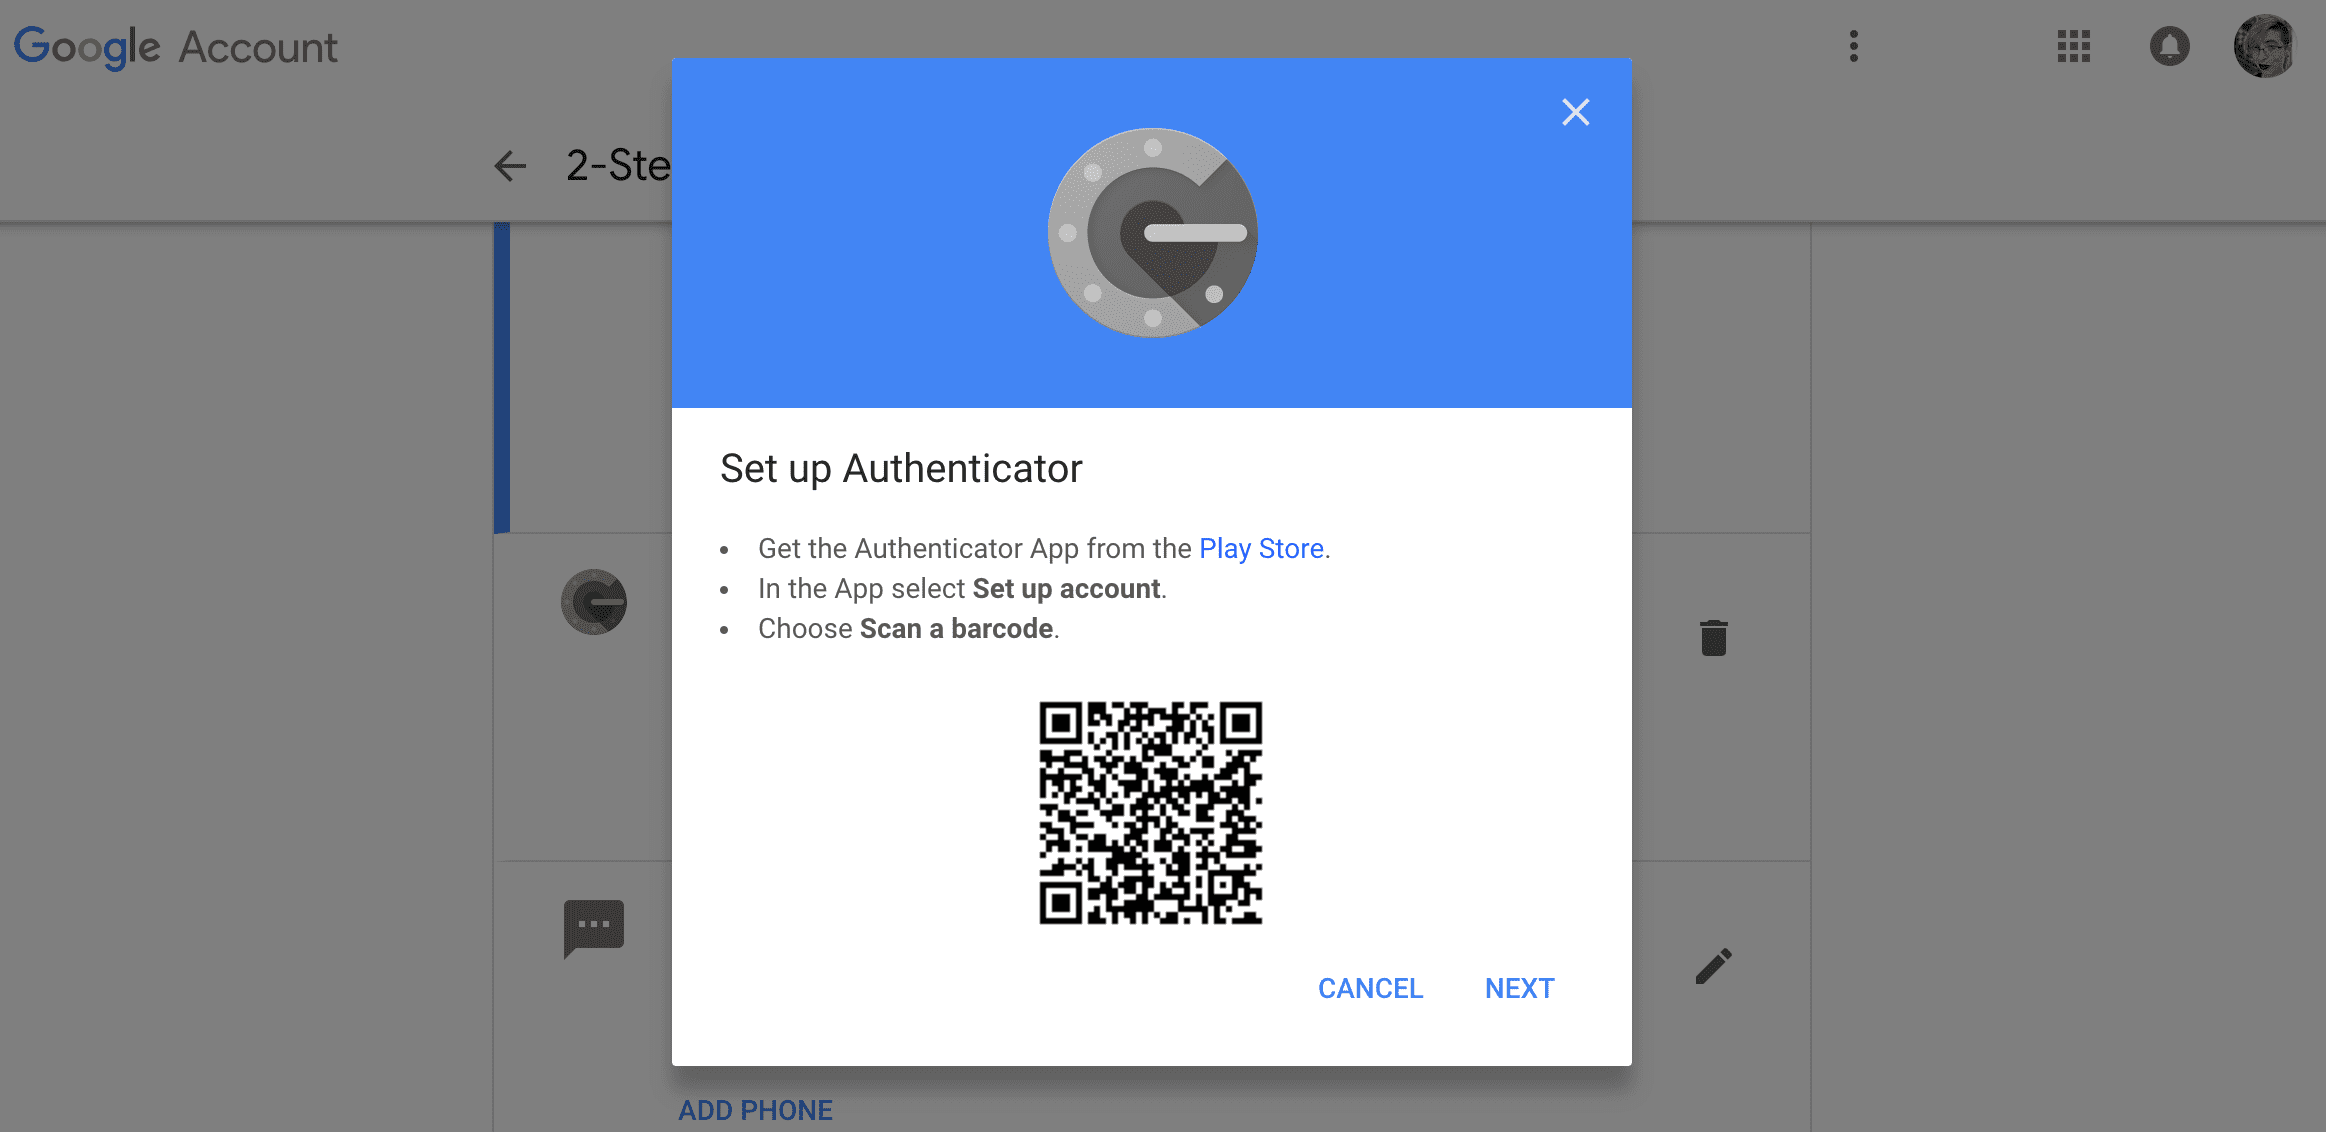 O Google Authenticator possui uma tela com mais instruções para configurar o aplicativo em um novo telefone.